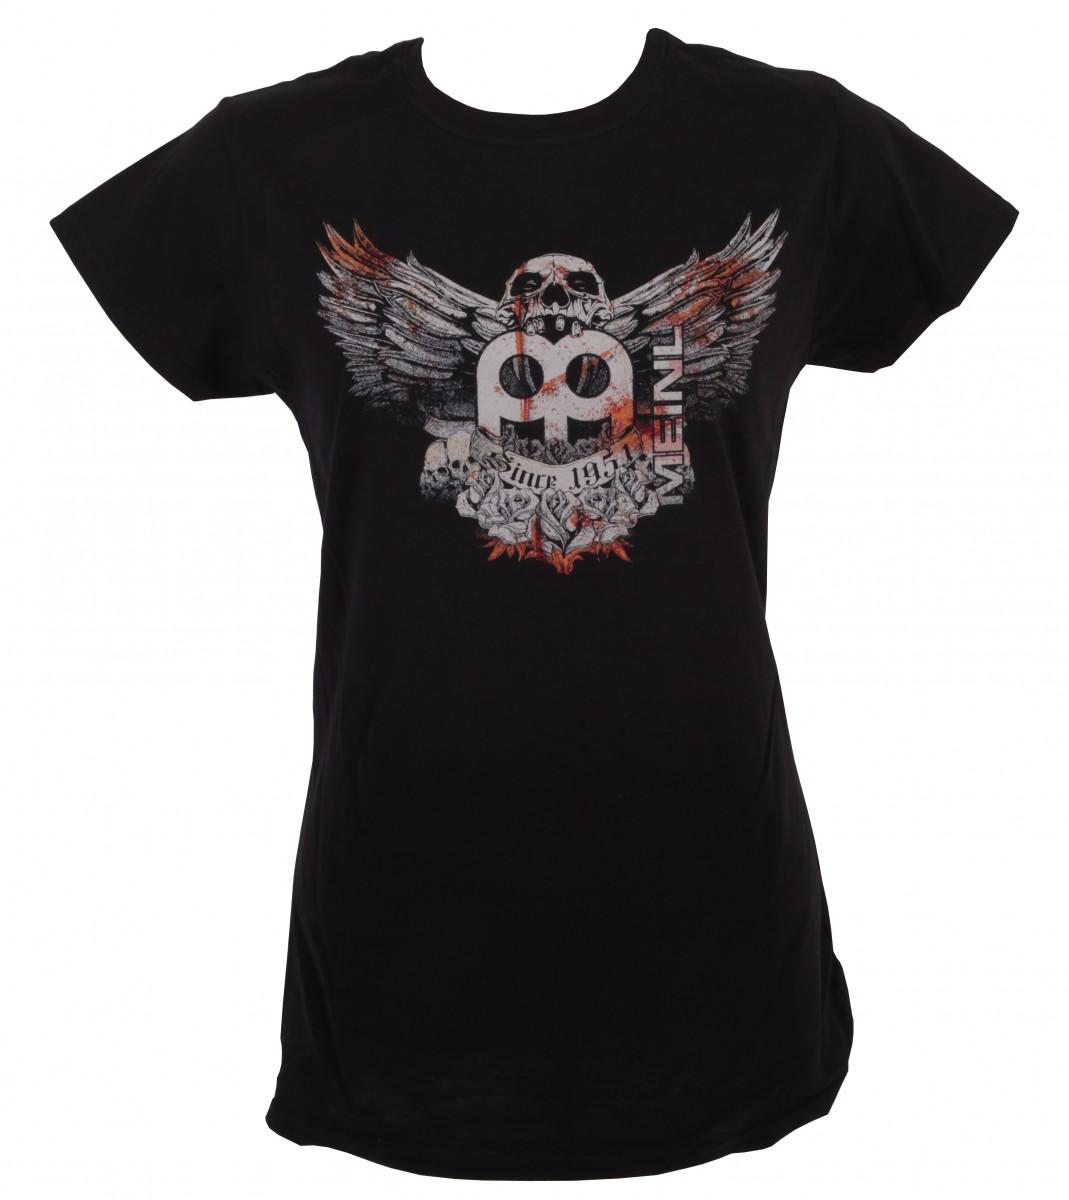 Jawbreaker Logo - Black Meinl T Shirt With Imprinted Jawbreaker Logo On Chest